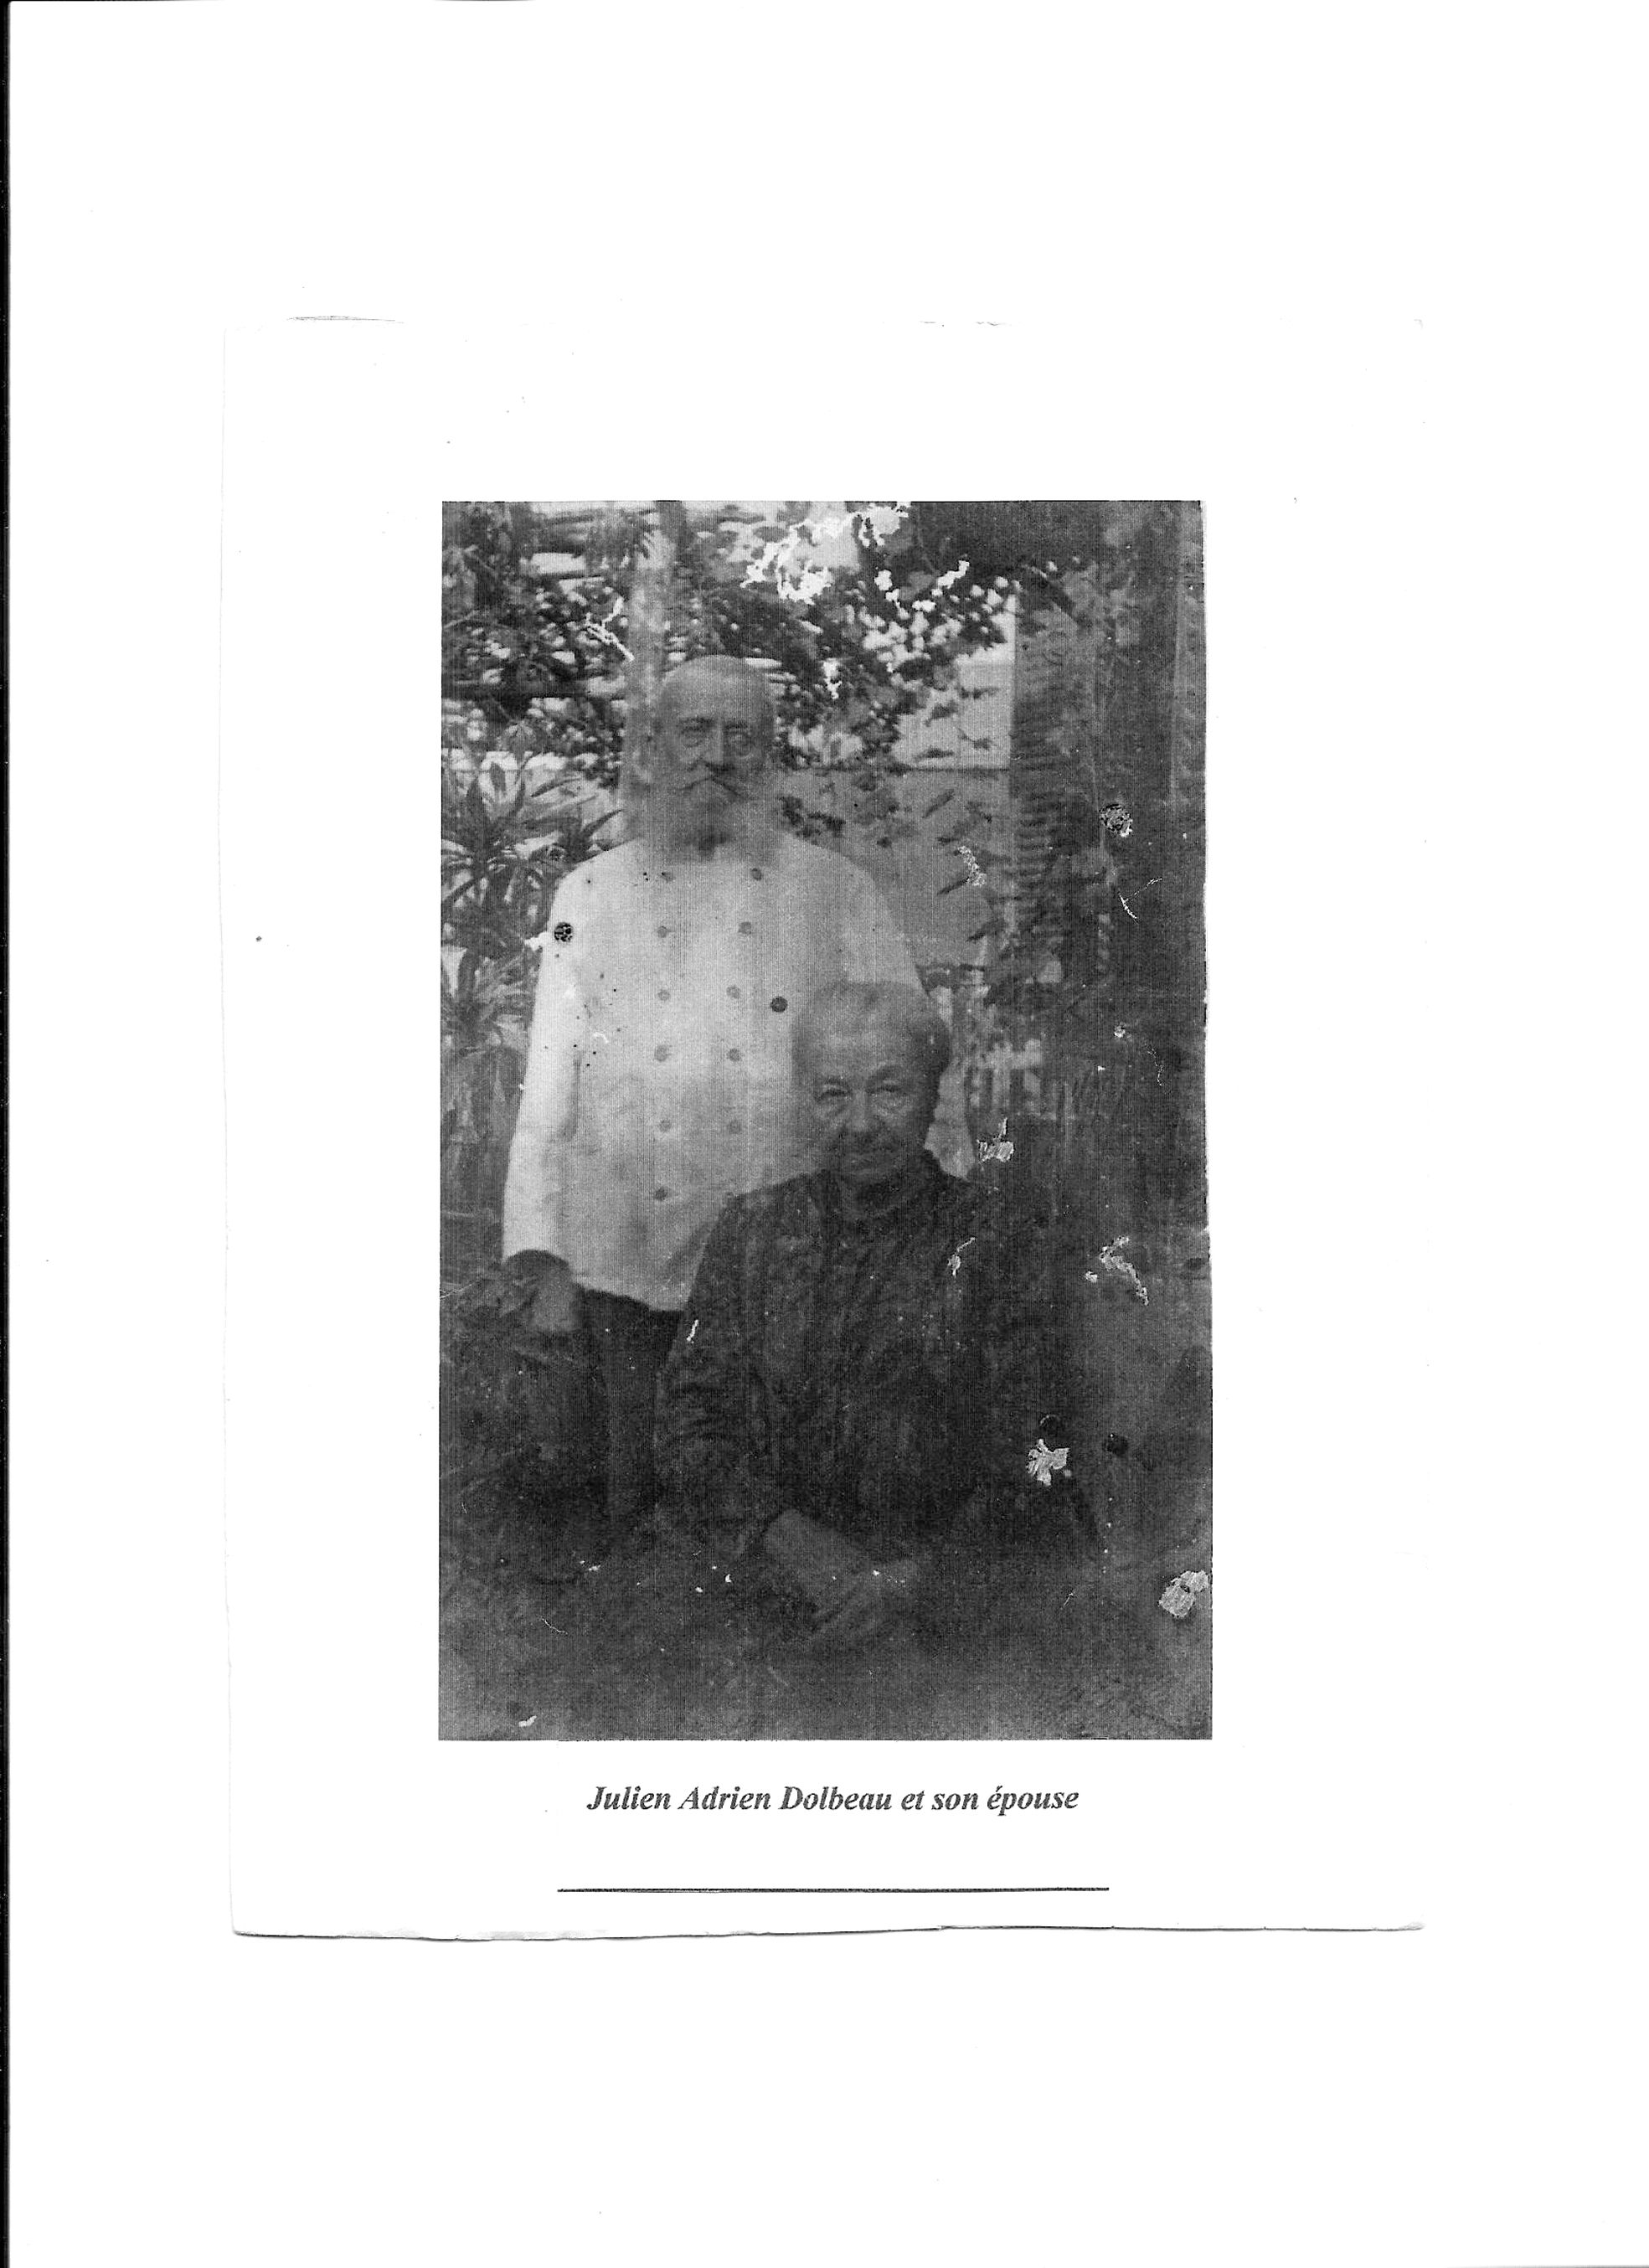 Julien Dolbeau et son épouse Marie dans le jardin de leur maison d'Angers, tout à la fin de sa vie. Il porte encore la barbe qui était un véritable culte pour les communards.